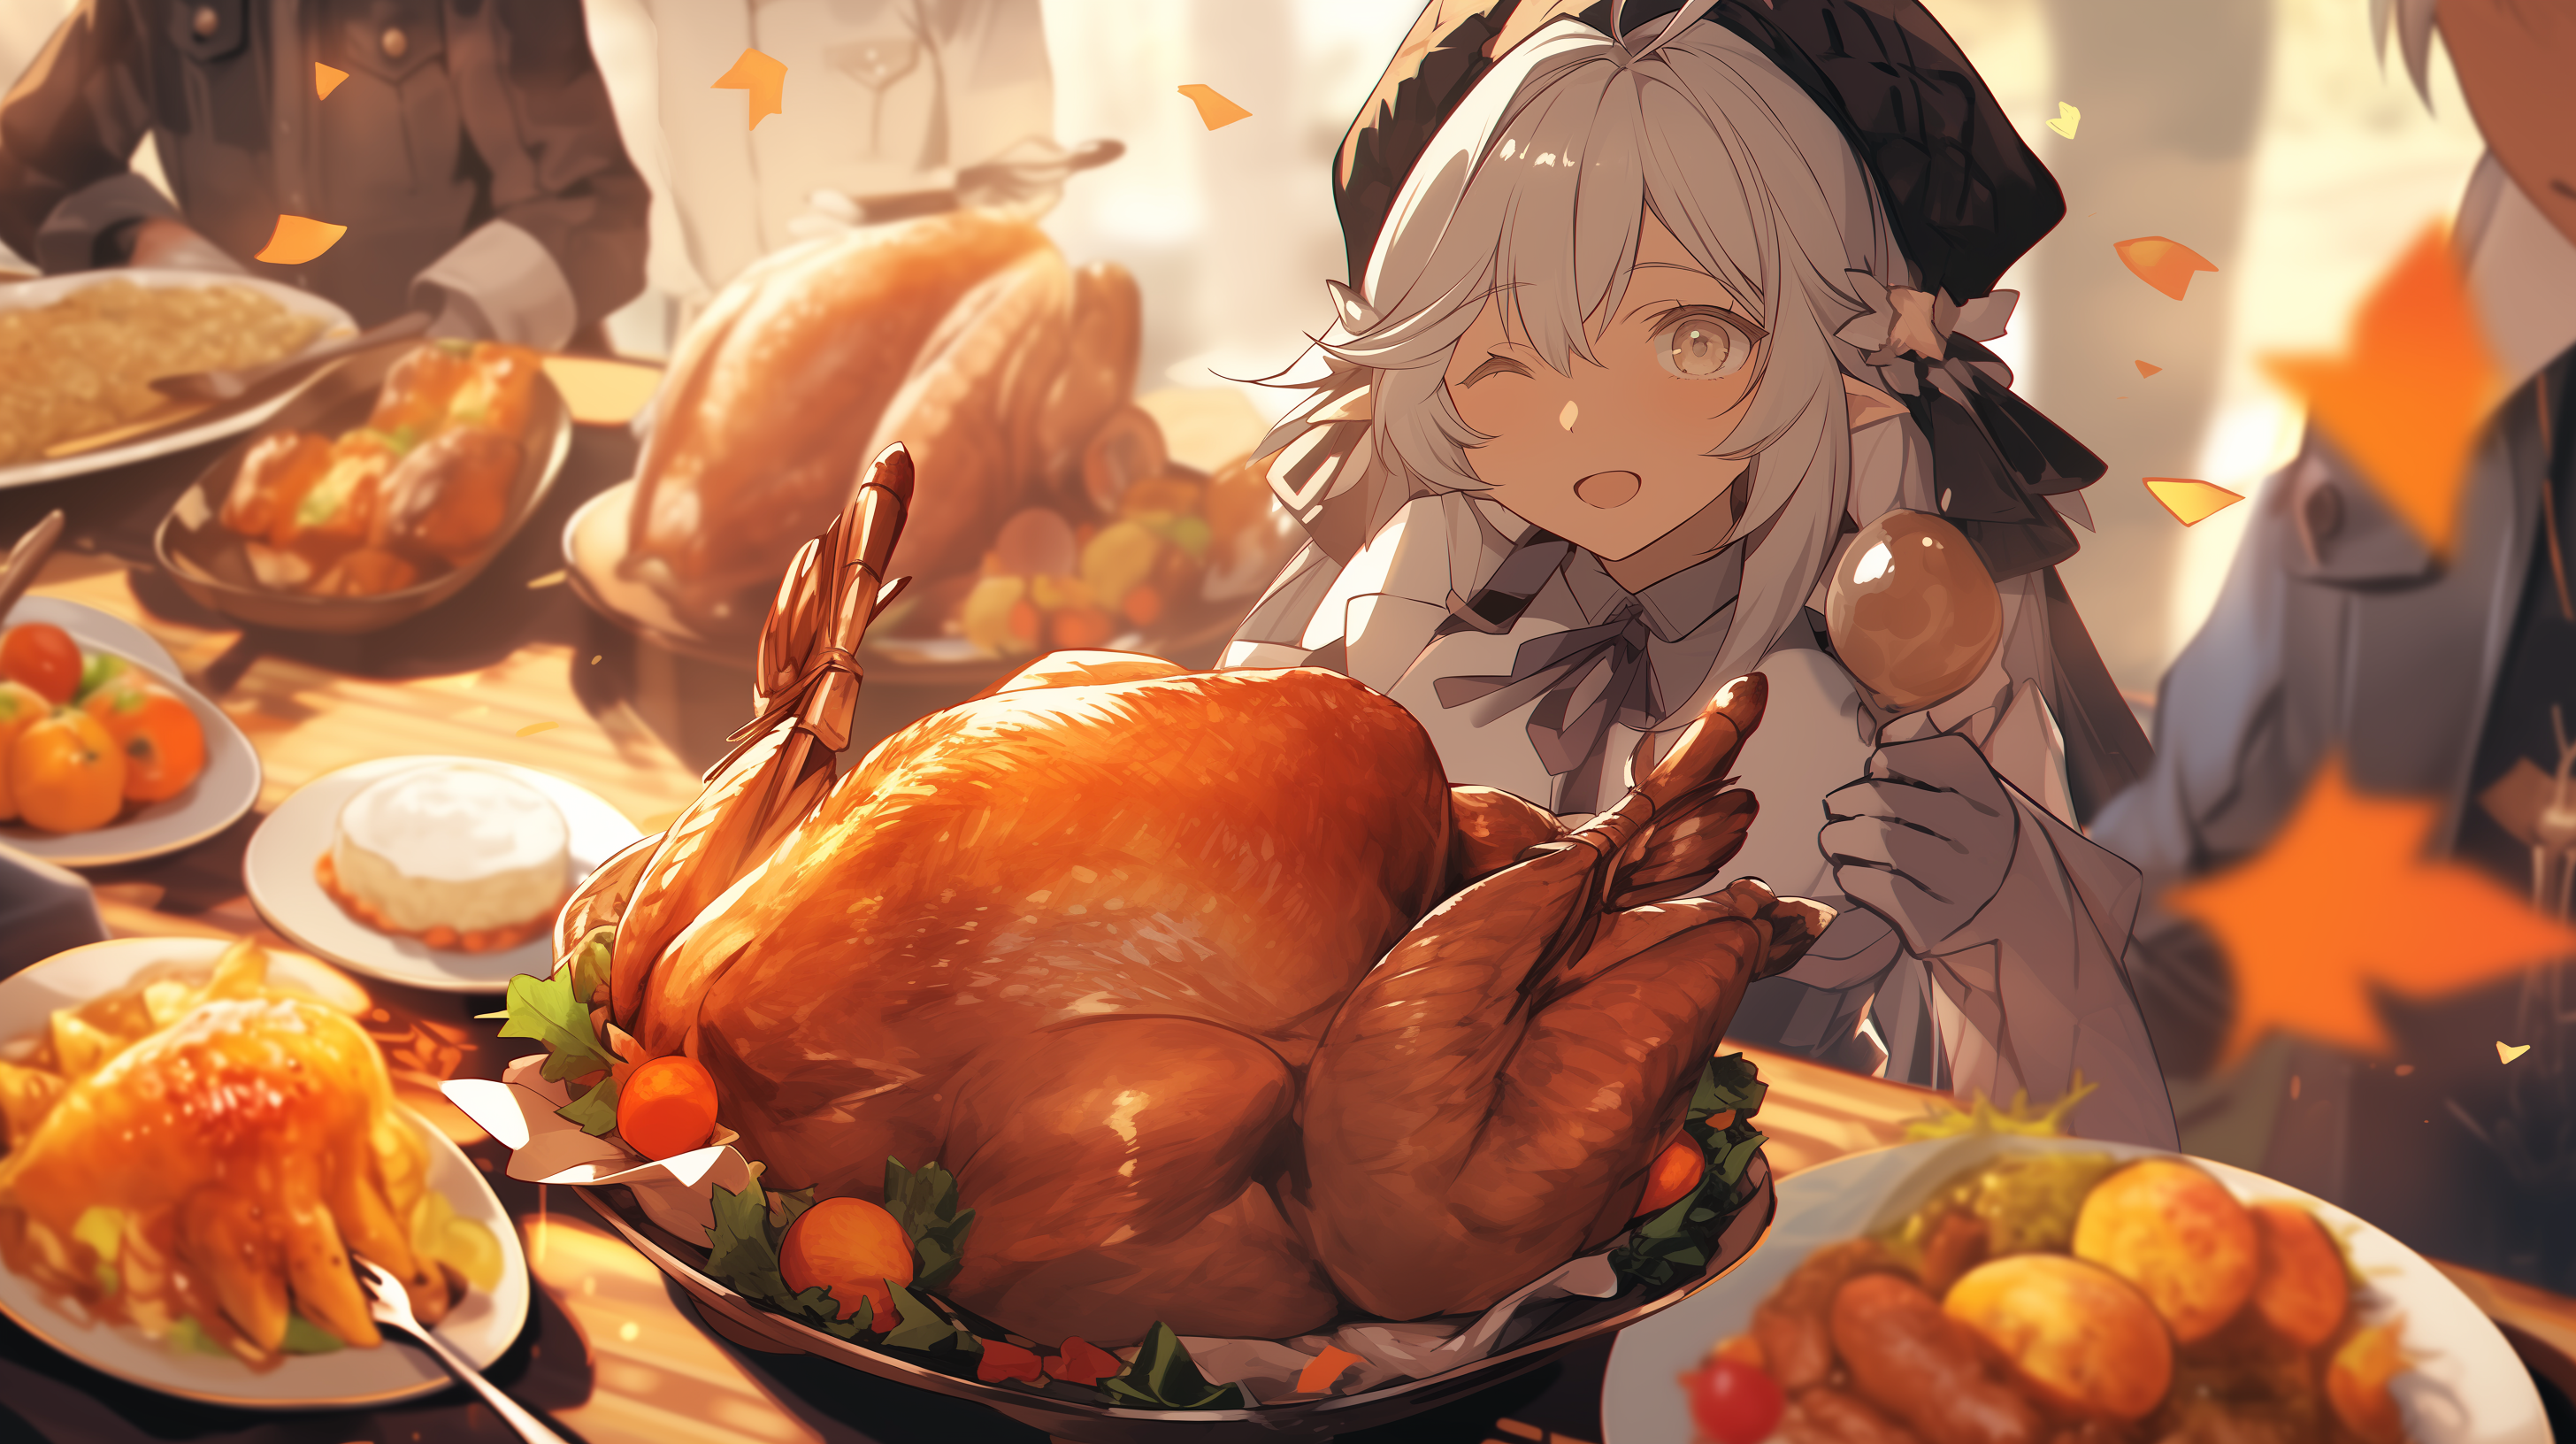 Anime Thanksgiving Pilgrims by 1animebro on DeviantArt